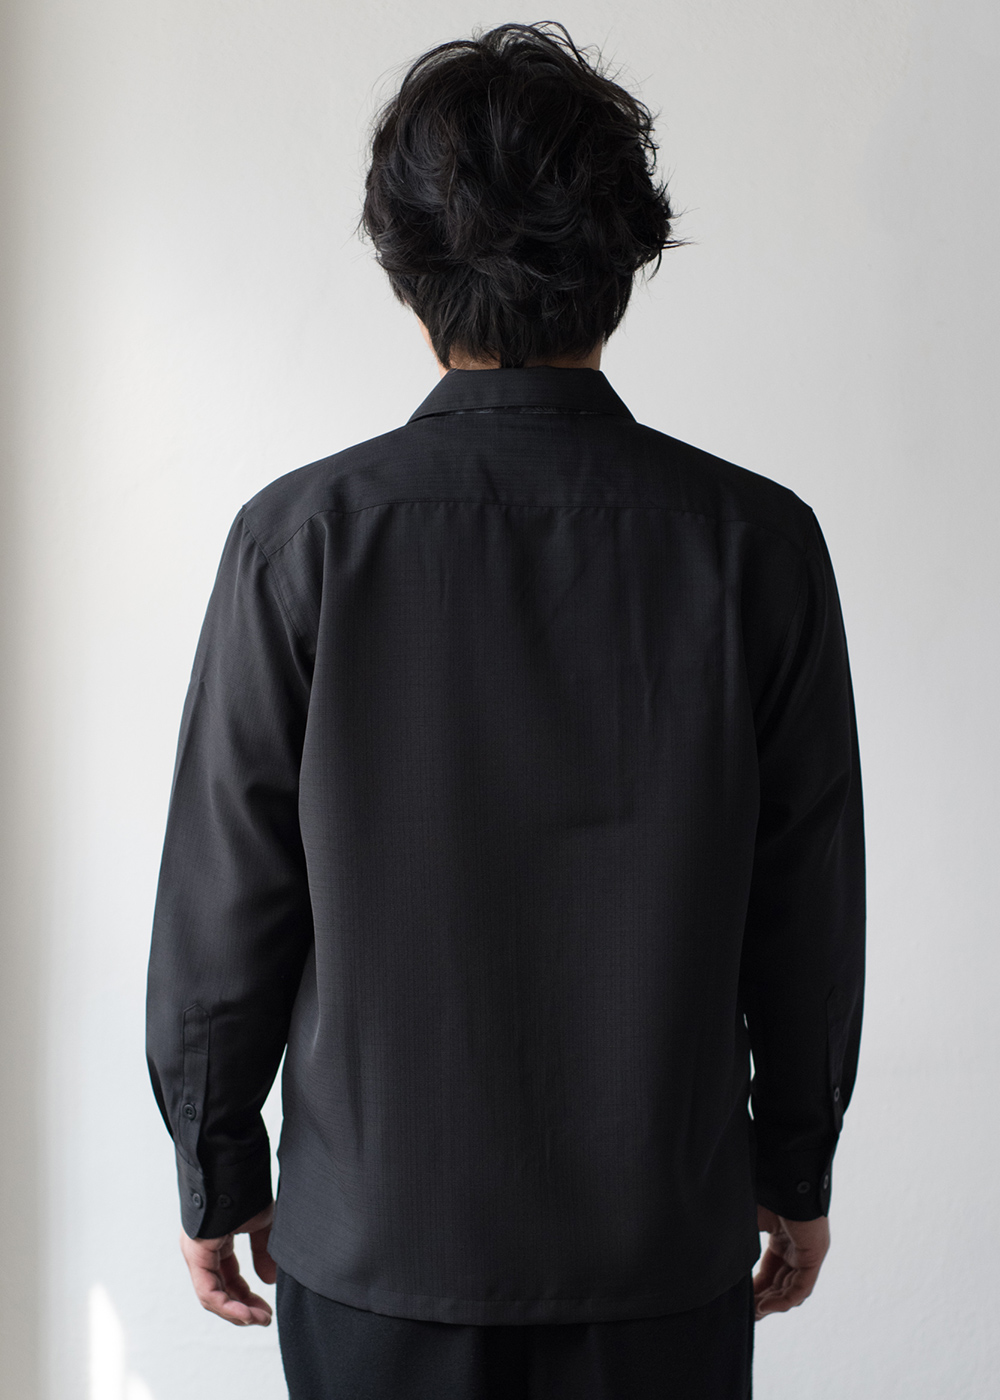 かりゆしウェア（沖縄版アロハシャツ） MAJUN - 黒輝鳳凰（長袖開襟）